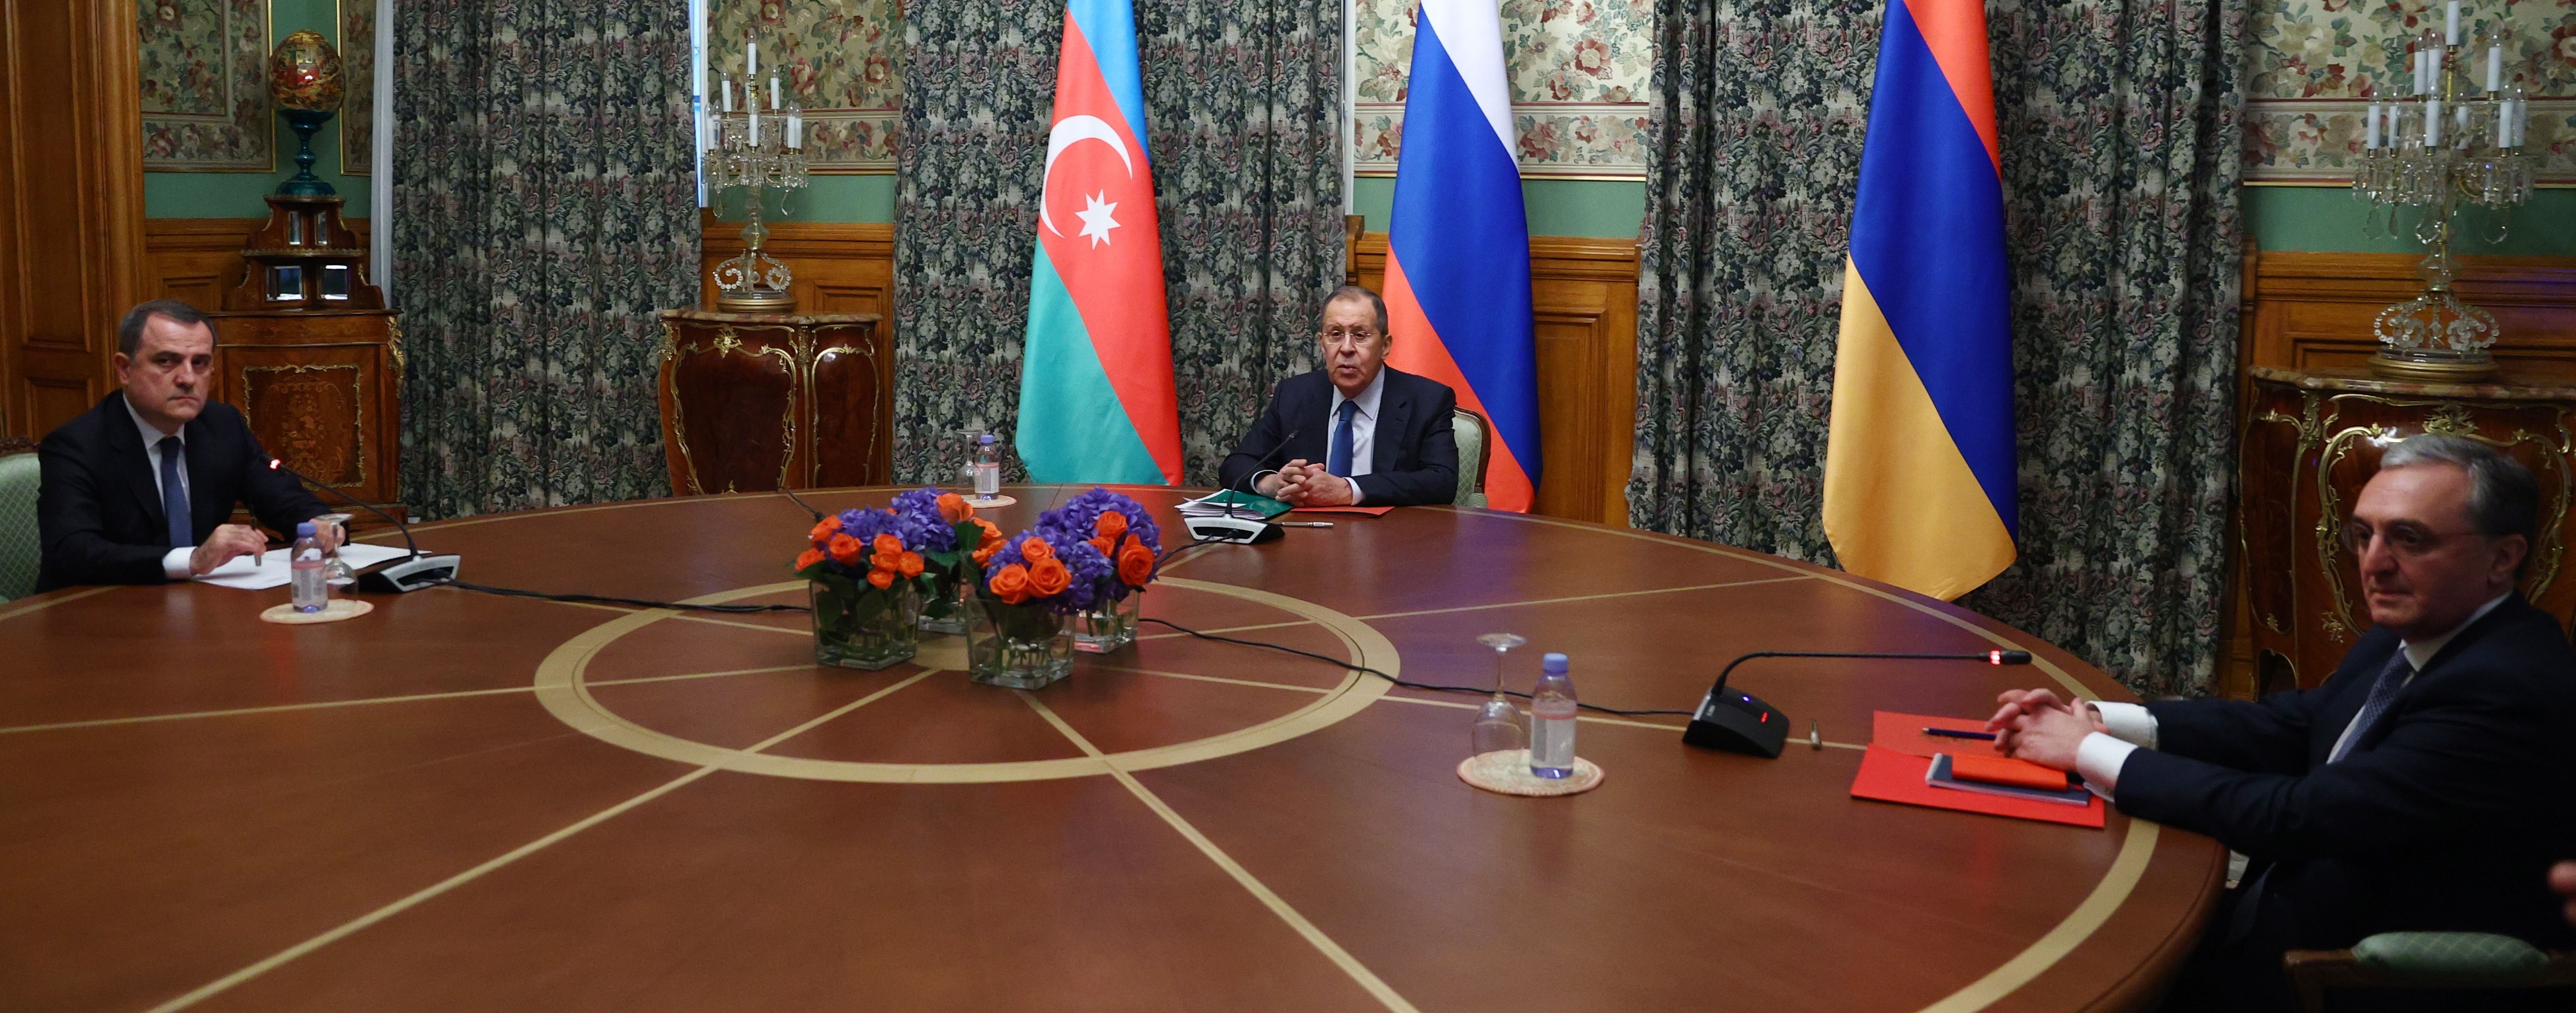 Una foto distribuida por el Ministerio de Relaciones Exteriores de Rusia muestra (I-D) al Ministro de Relaciones Exteriores de Azerbaiyán, Jeyhun Bayramov, al Ministro de Relaciones Exteriores de Rusia, Sergei Lavrov, y al Ministro de Relaciones Exteriores de Armenia, Zohrab Mnatsakanyan, durante las conversaciones trilaterales sobre la situación de Nagorno-Karabaj en Moscú, Rusia, 9 de octubre de 2020. EFE/EPA/RUSSIAN FOREIGN AFFAIRS MINISTRY
